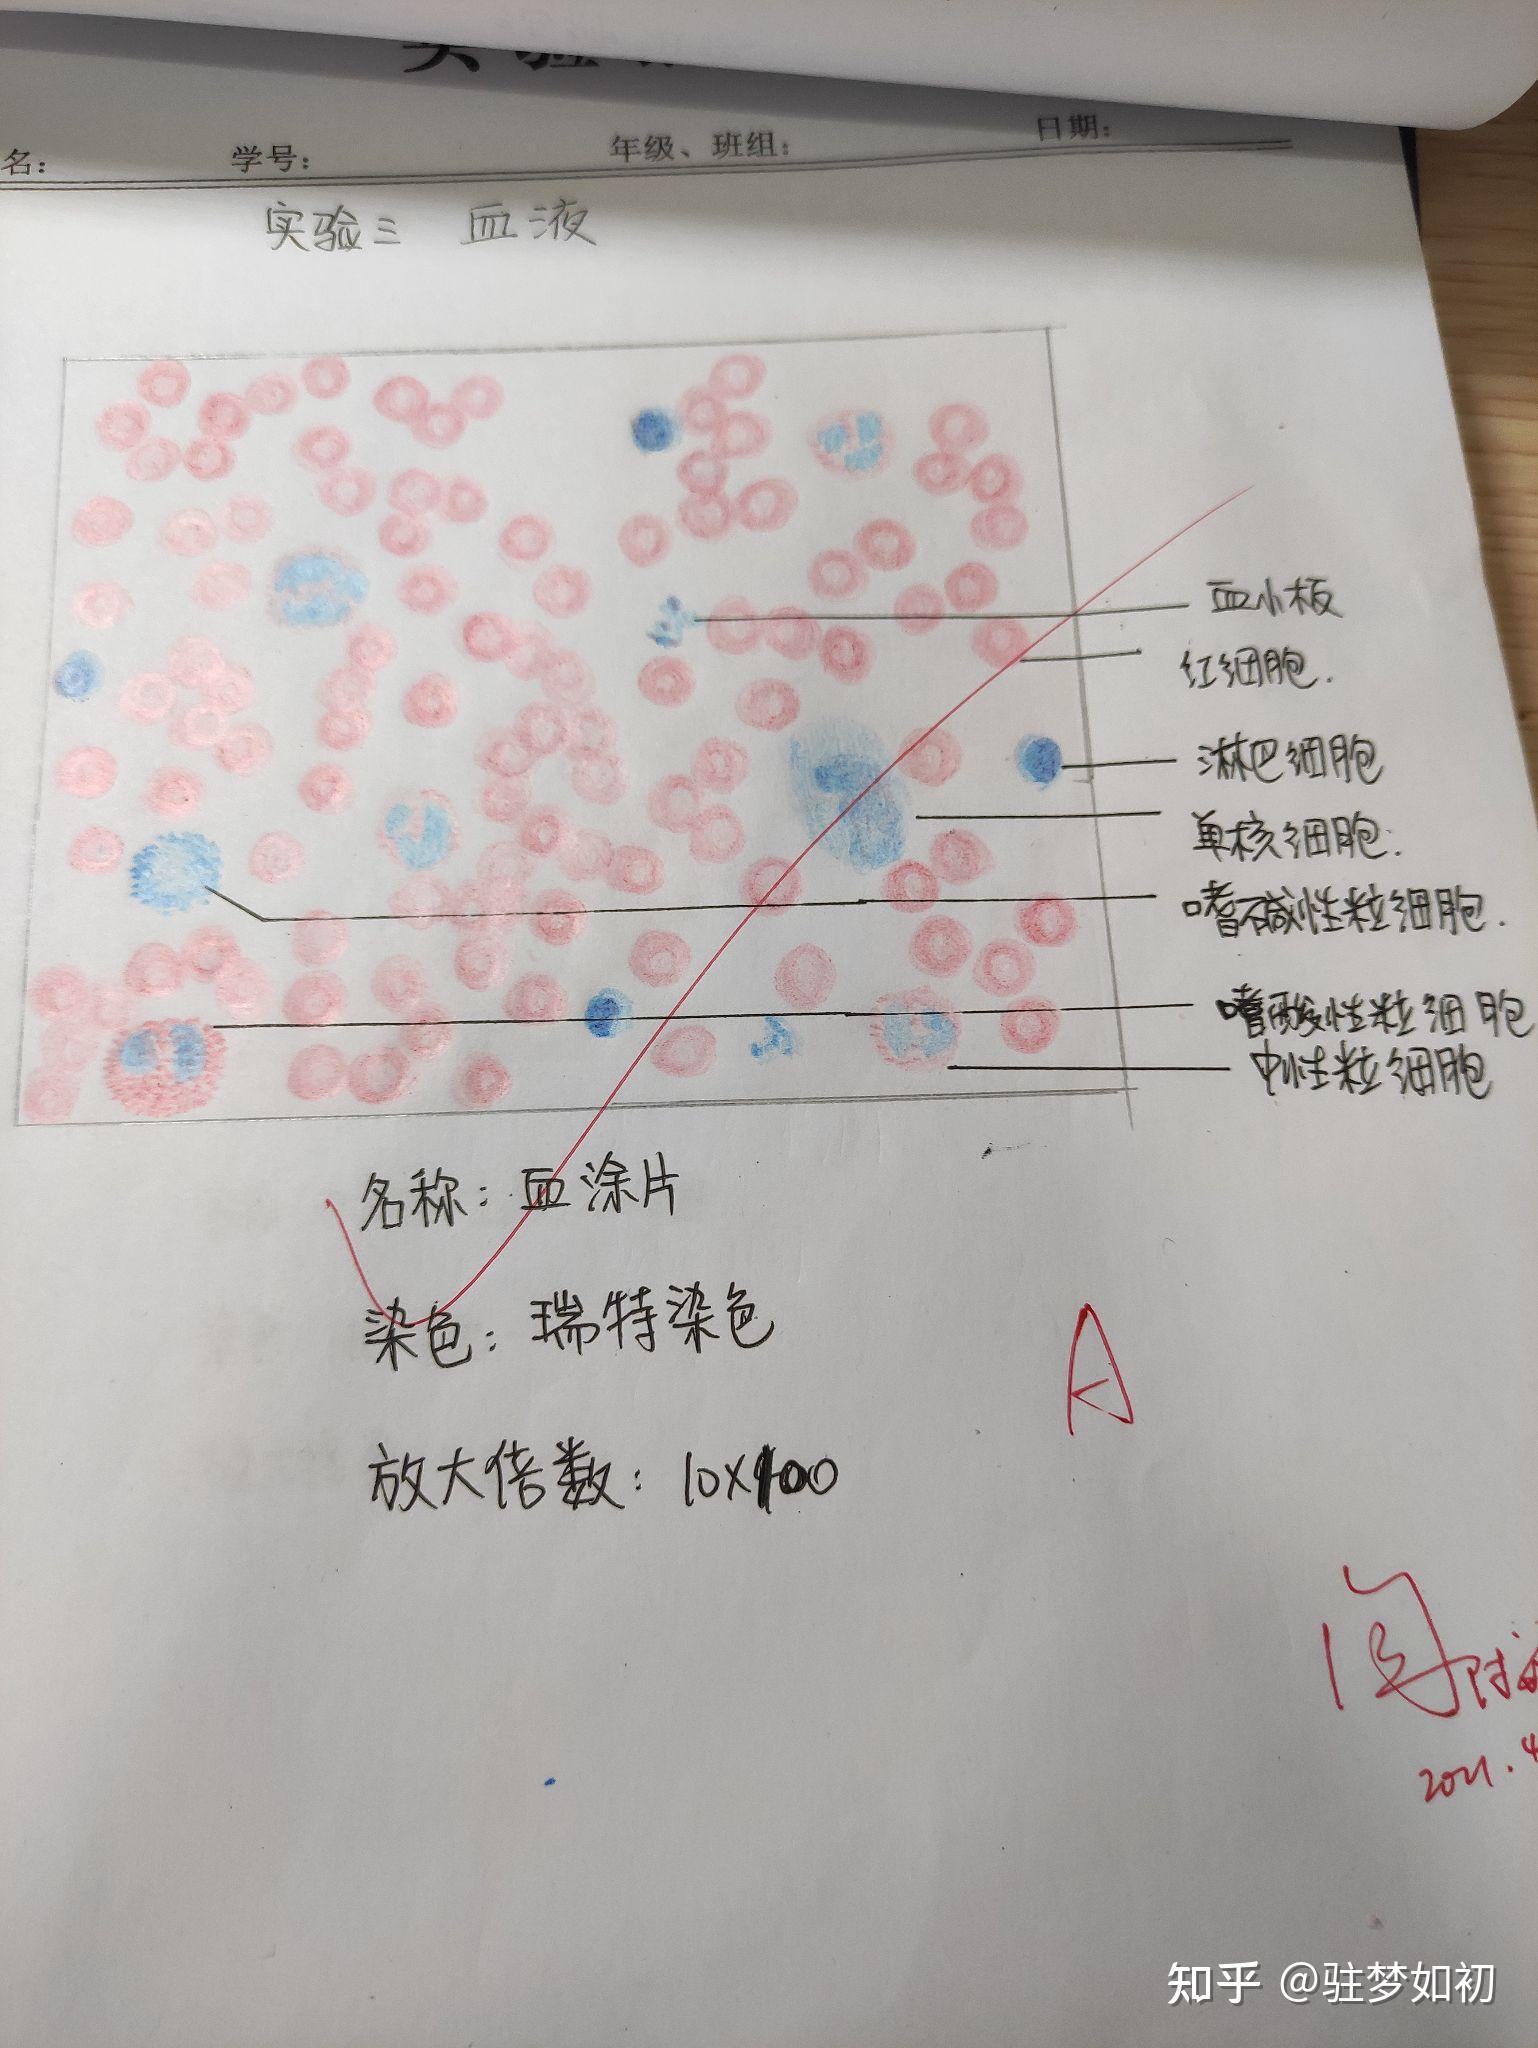 粒细胞红蓝铅笔手绘图图片